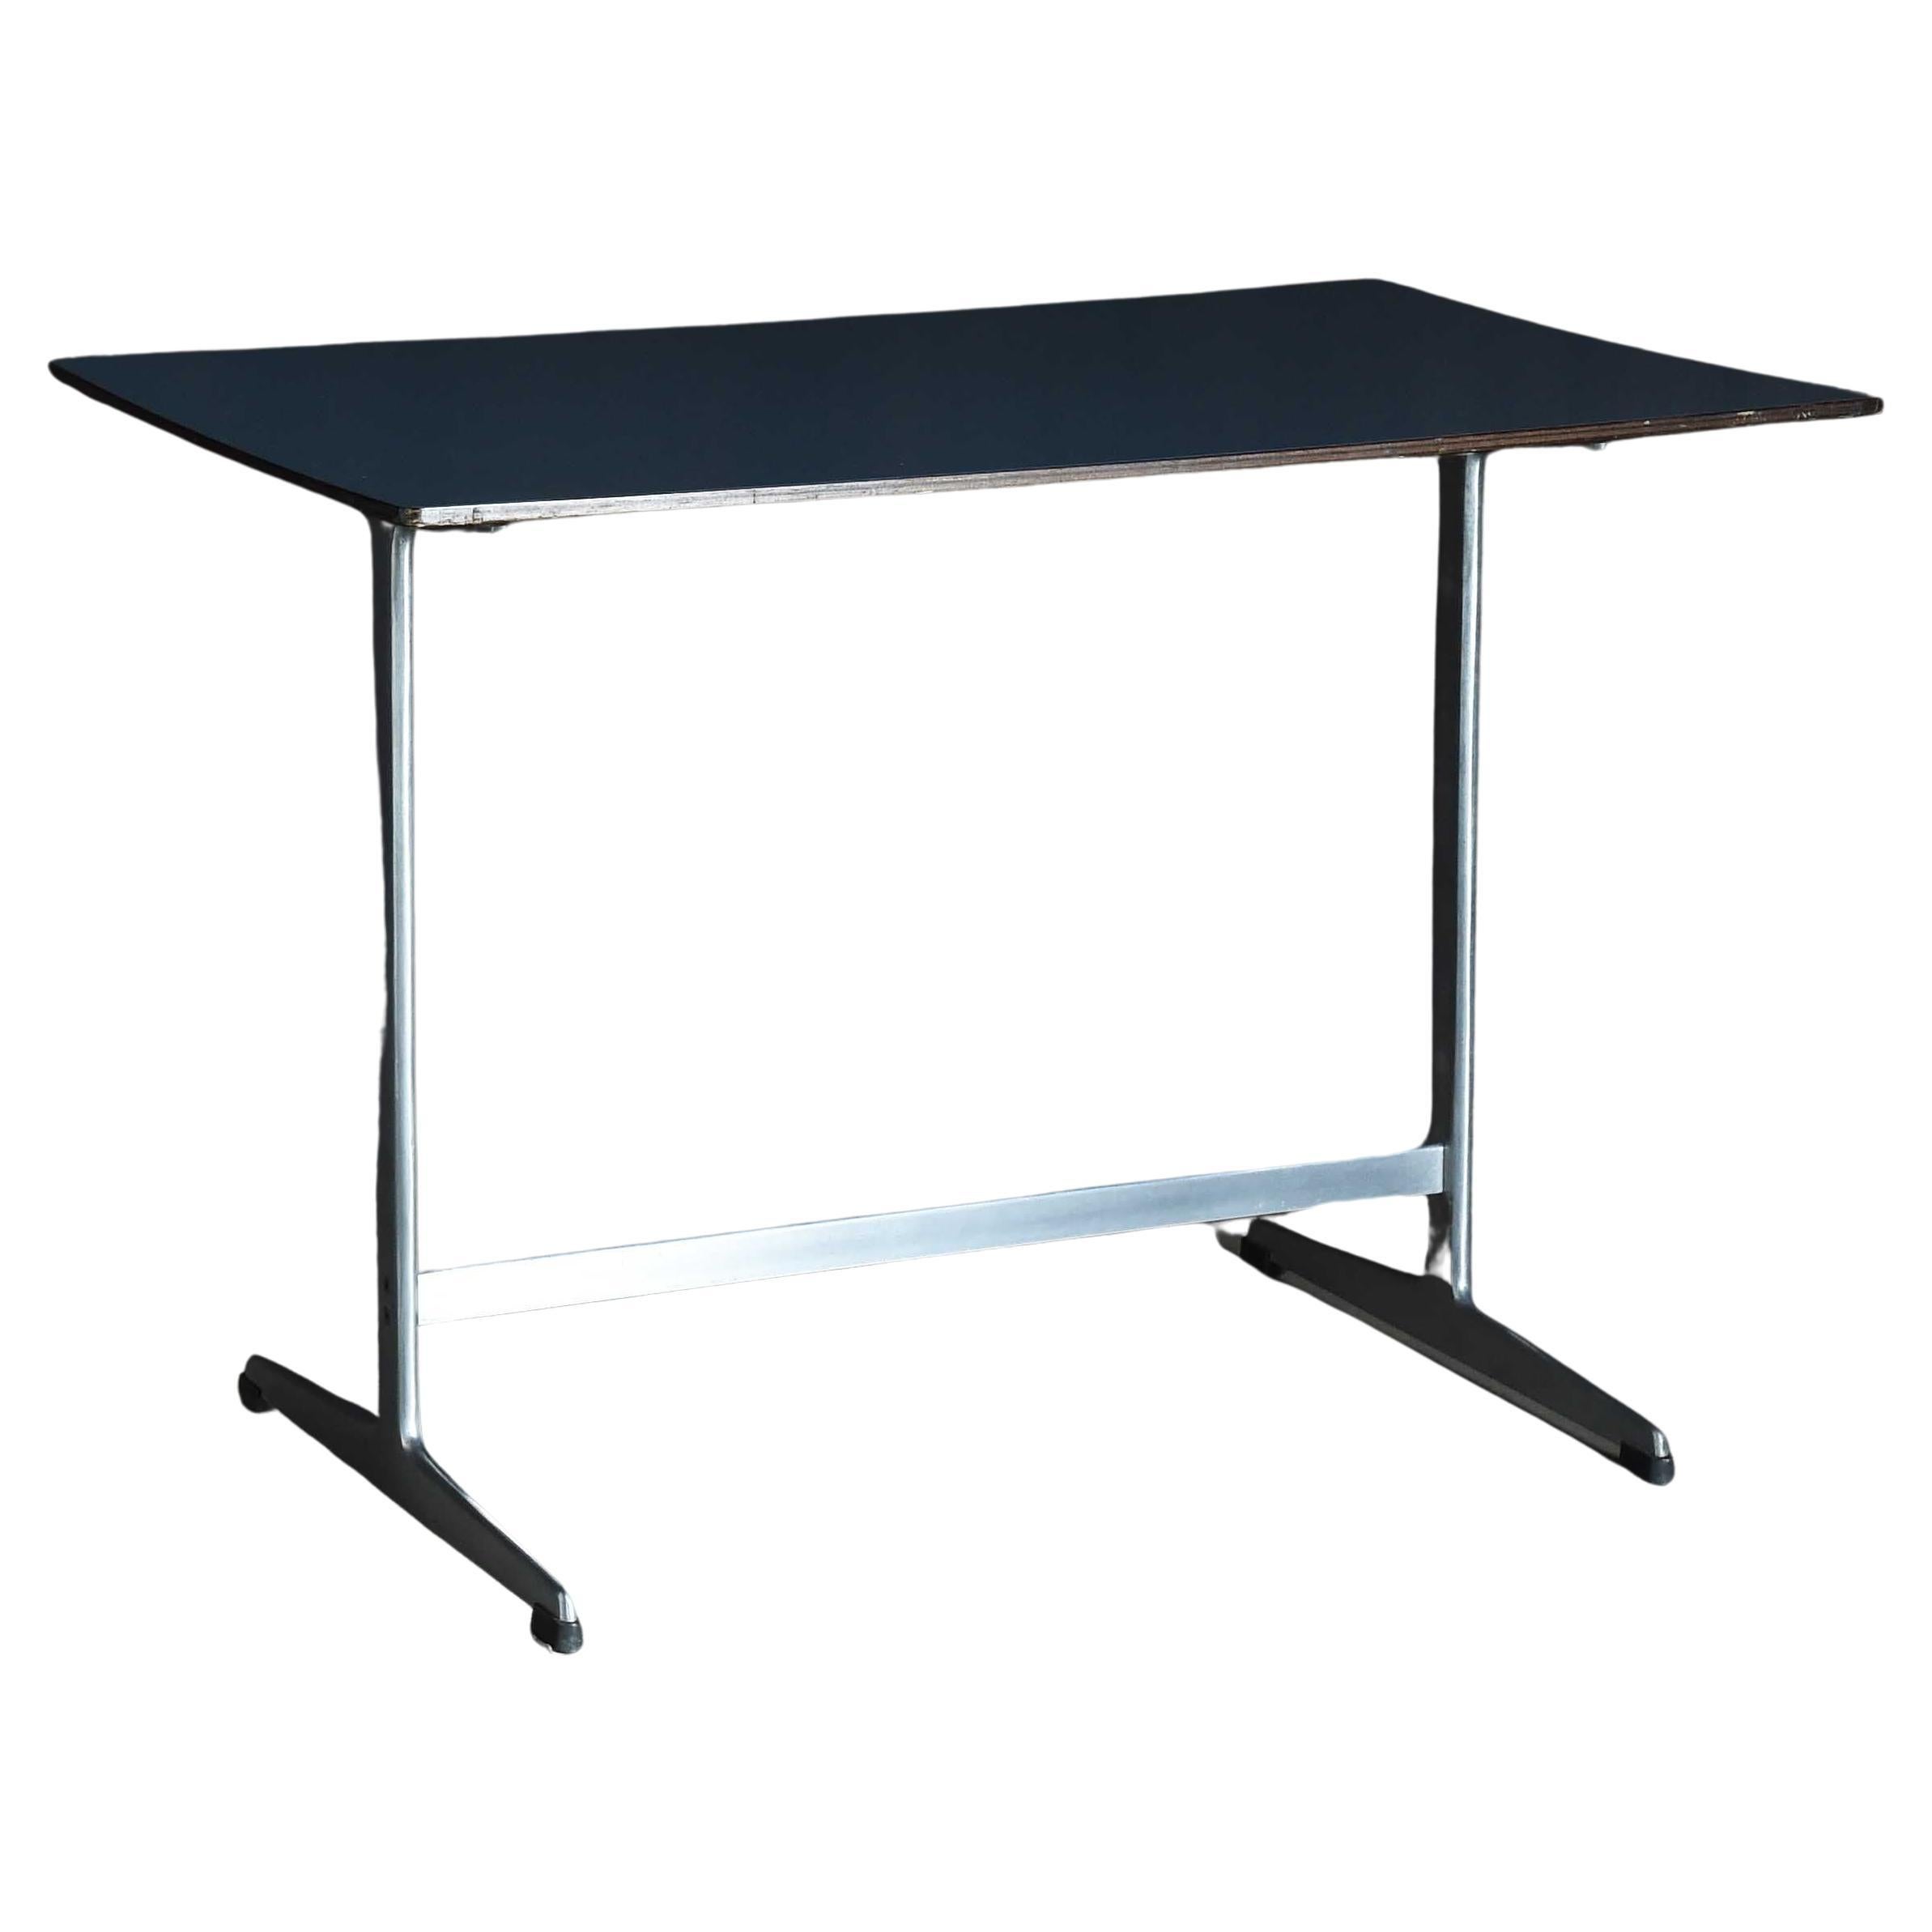 Arne Jacobsen "Shaker table" For Sale